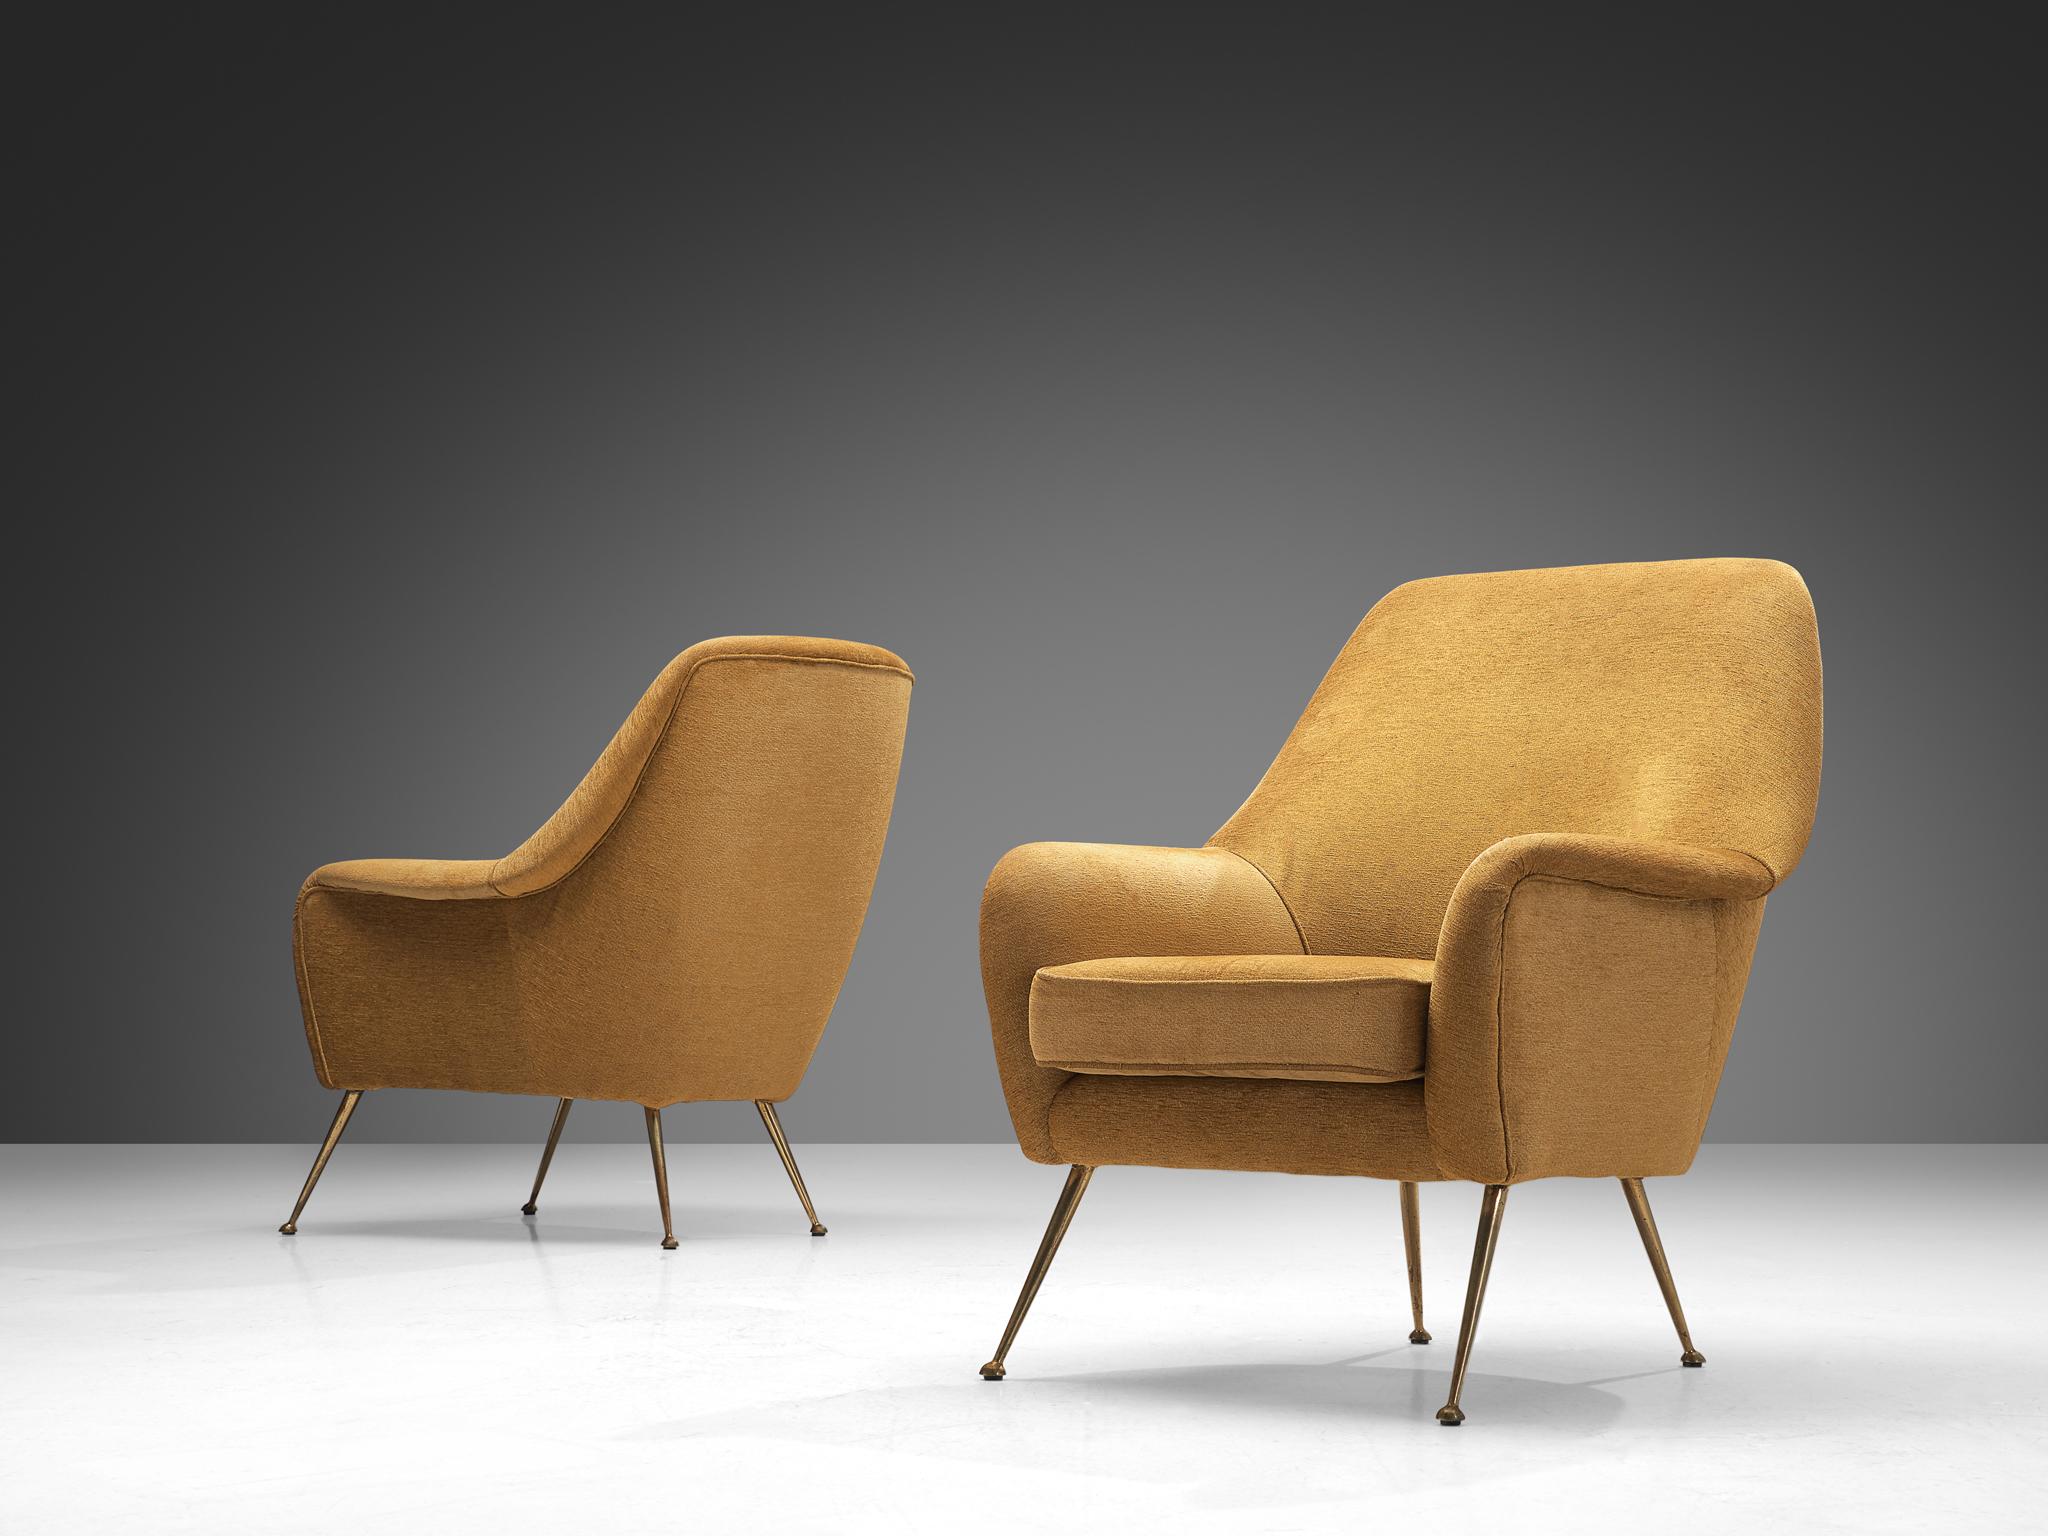 Paire de chaises longues, tissu, laiton, Italie, années 1950.

Ce fauteuil italien se caractérise par une esthétique élégante grâce à ses lignes courbes et ses bords arrondis. Le siège est soutenu par des pieds élégants en laiton orientés vers